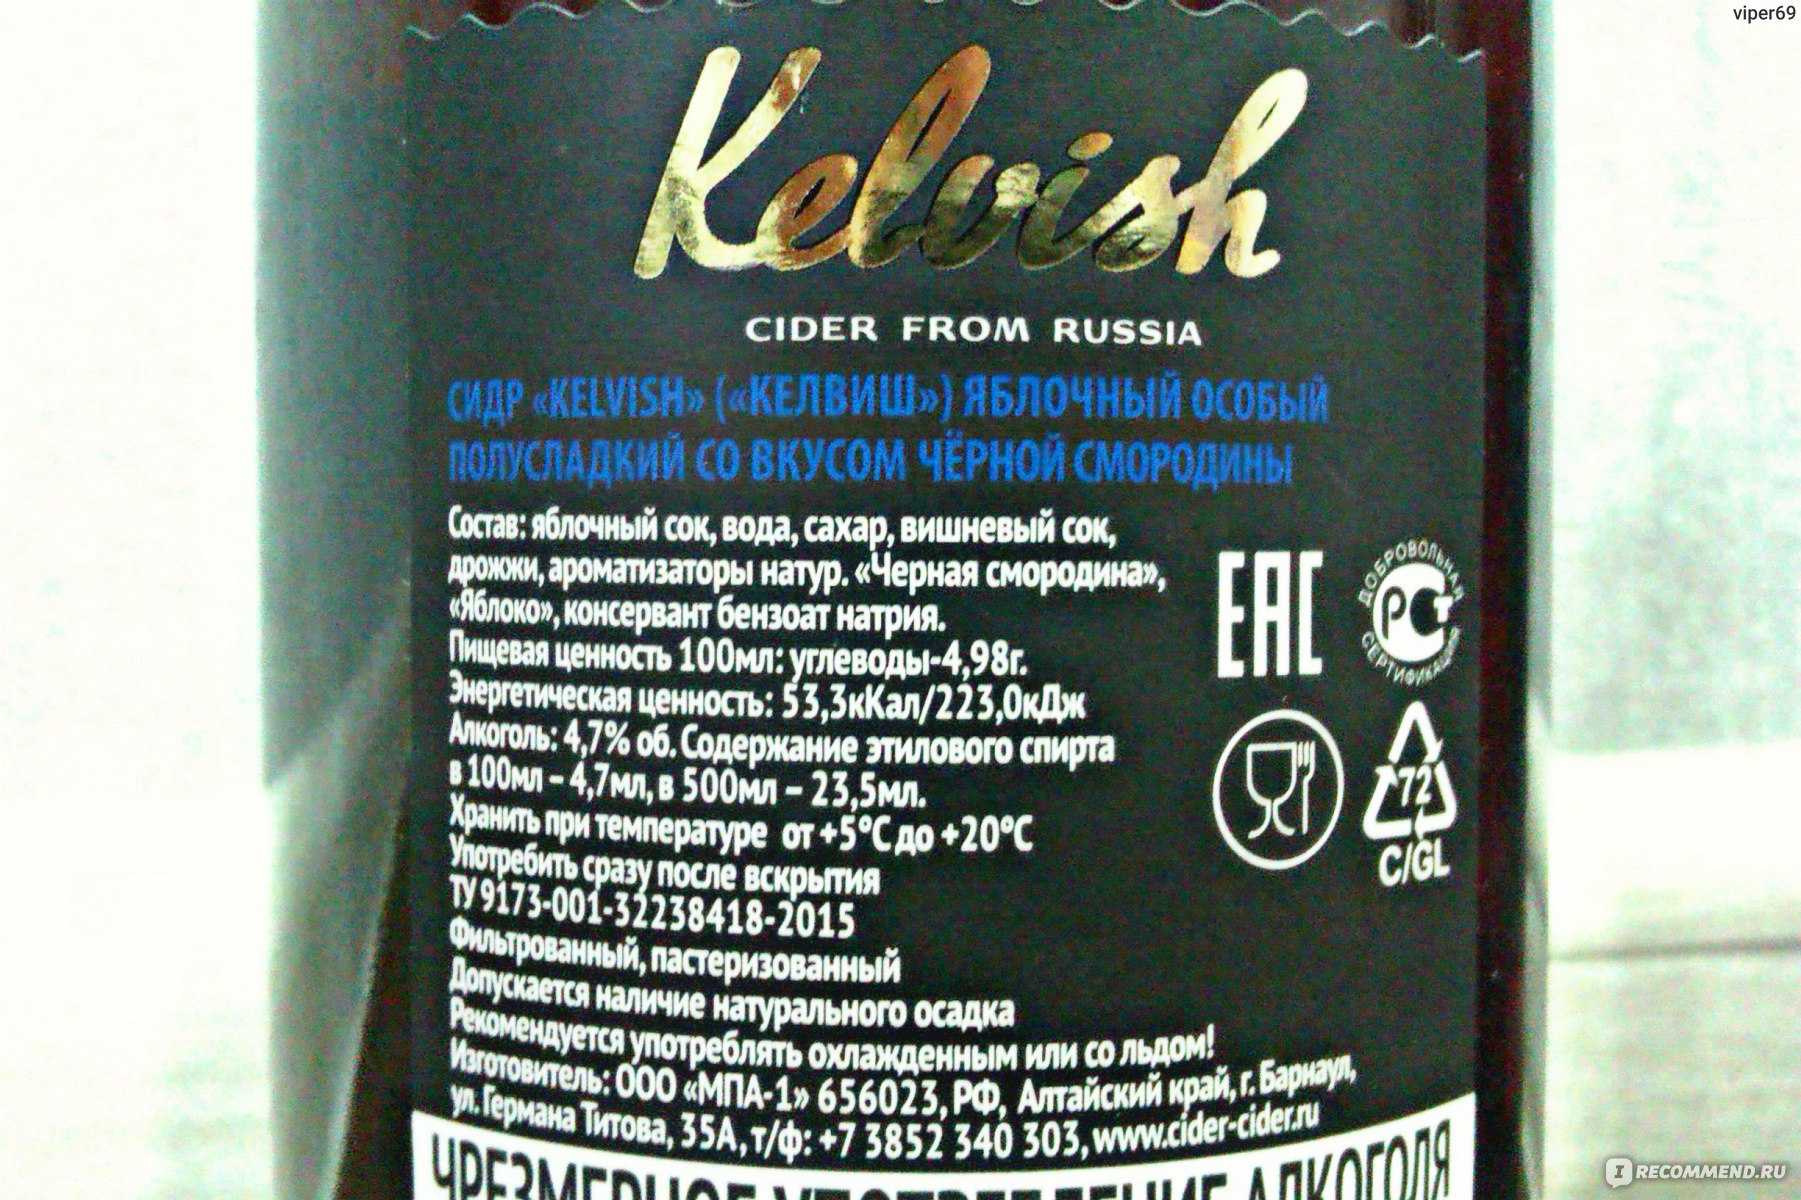 Келвиш (сидр): краткое описание напитка, полезные свойства, отзывы